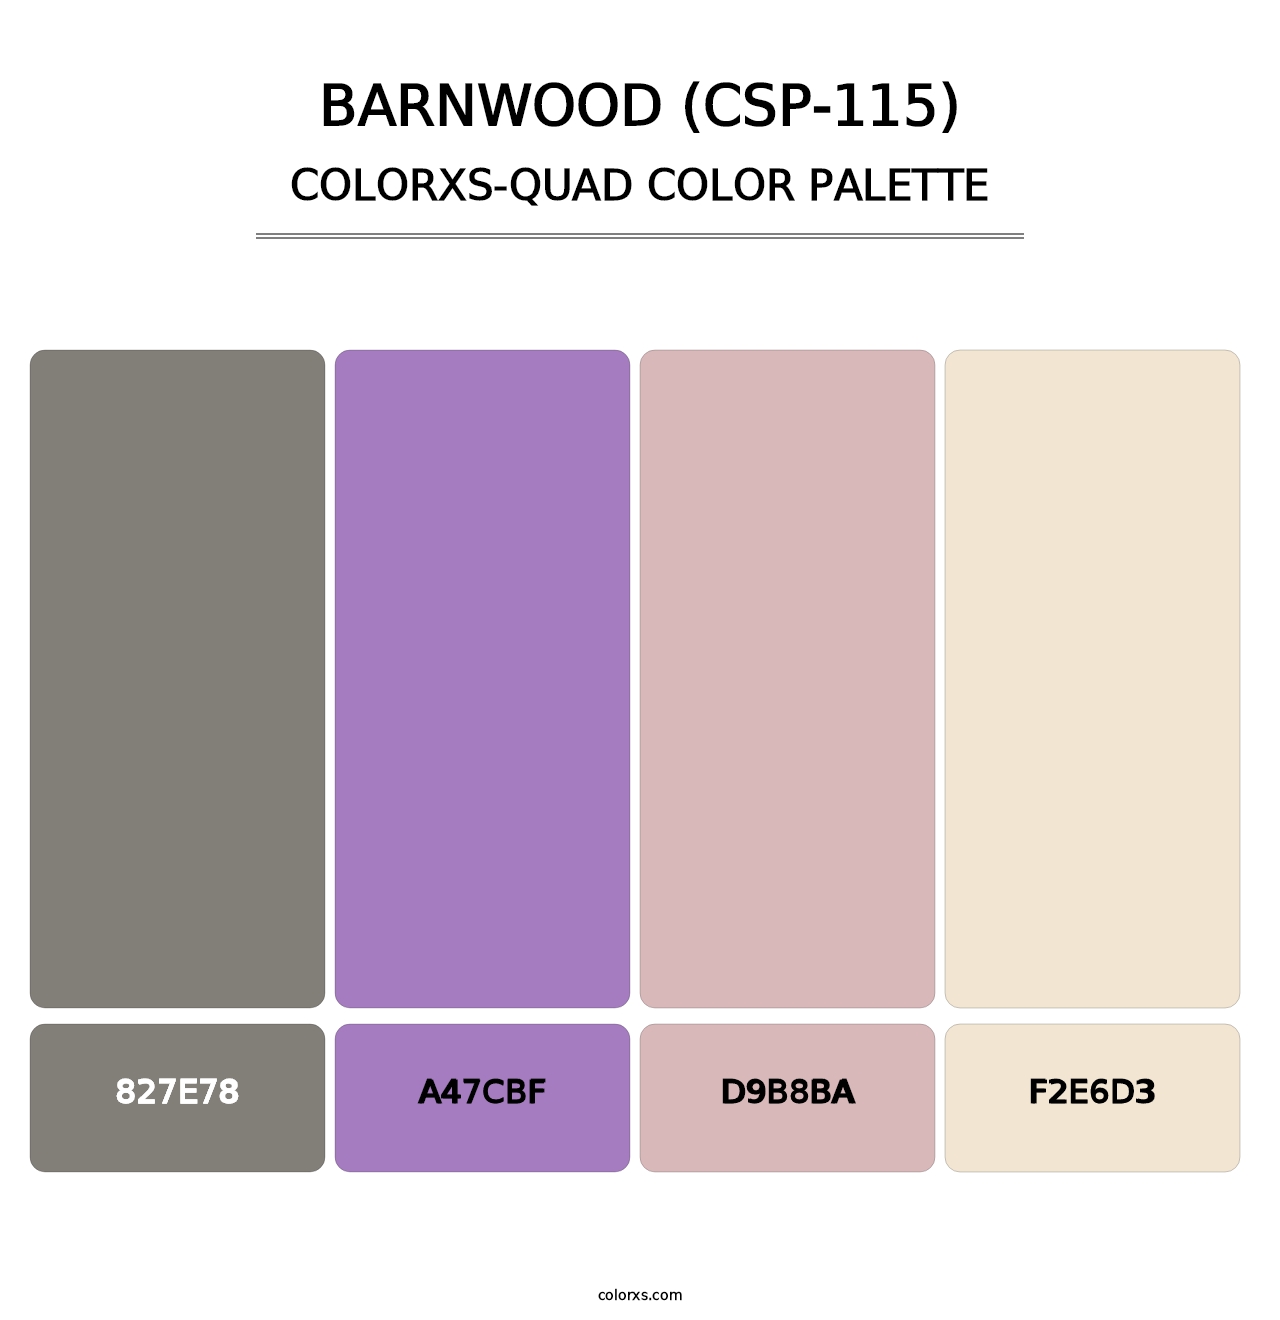 Barnwood (CSP-115) - Colorxs Quad Palette